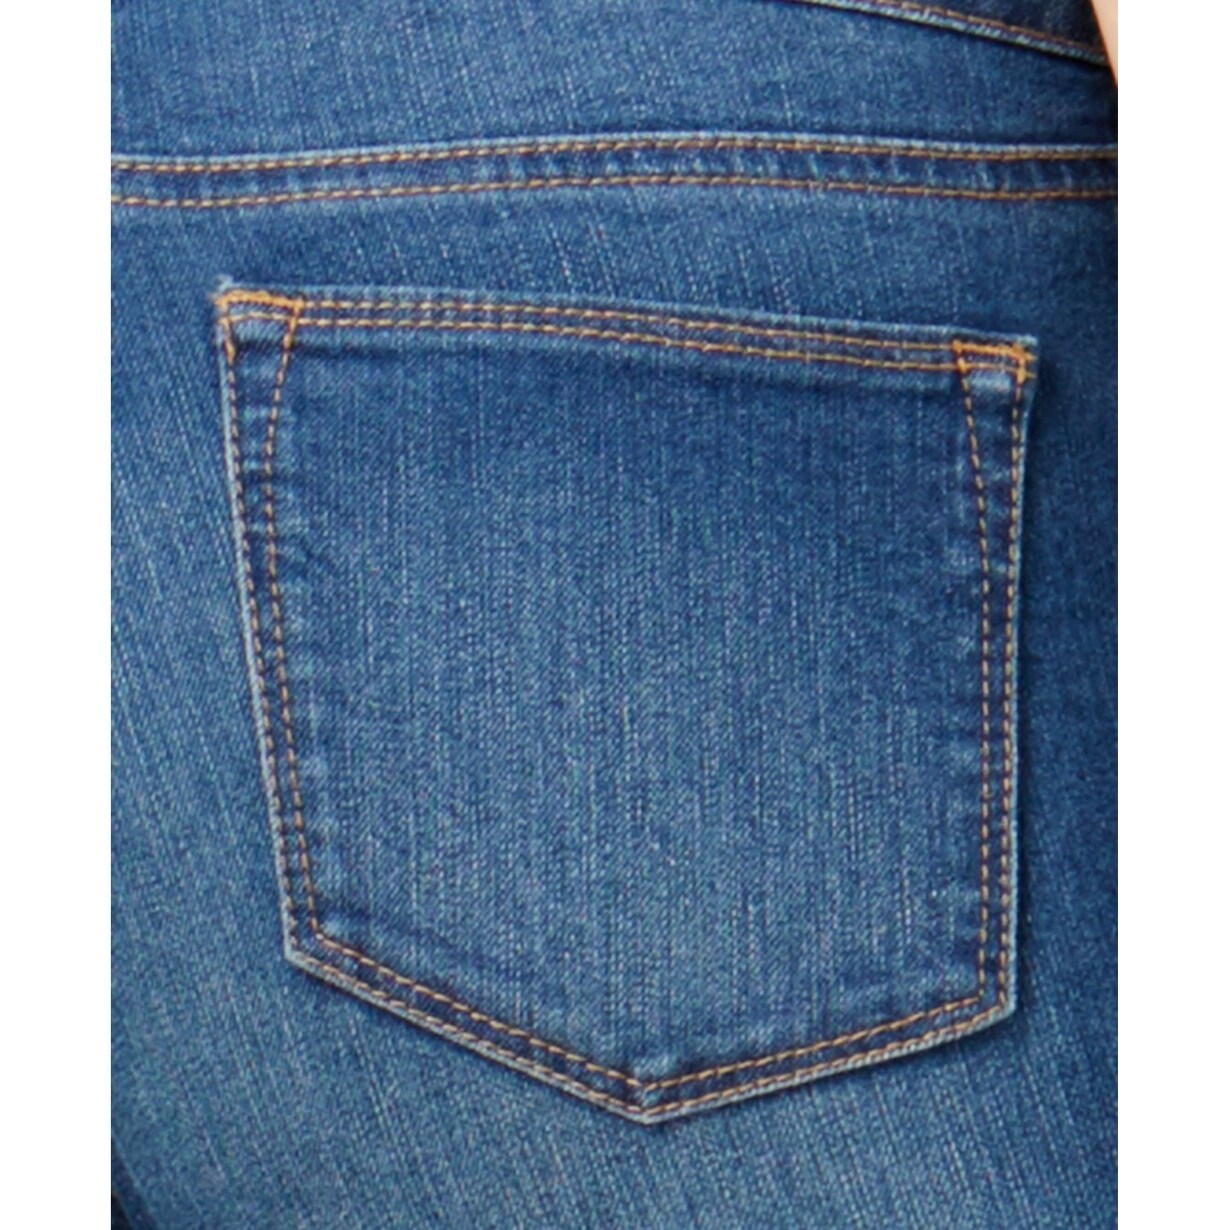 size 8 short jeans